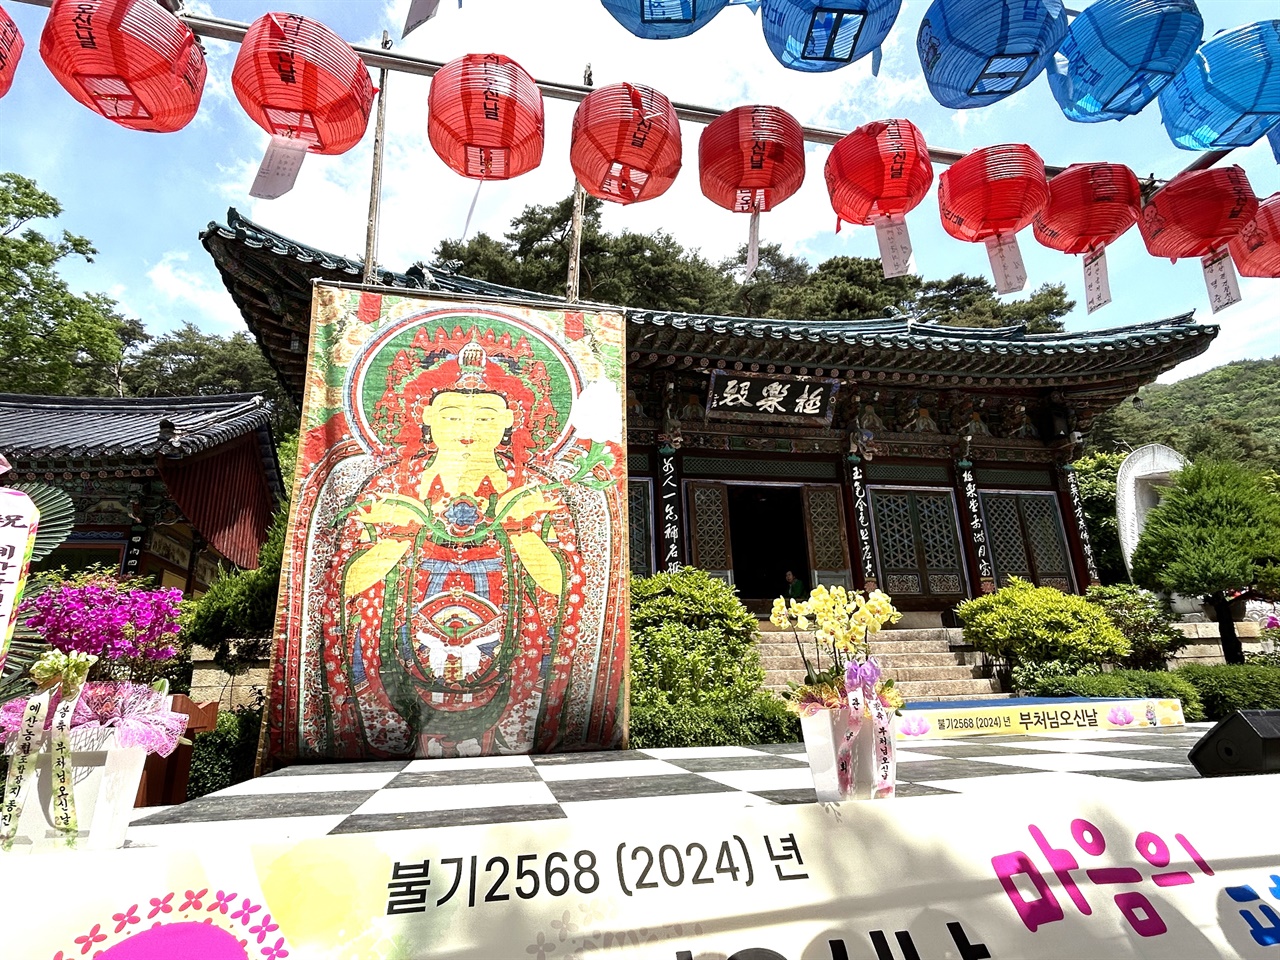 부처님 오신 날을 앞두고 1300여 년의 역사를 간직한 한 사찰에서 산사음악회가 열렸다.